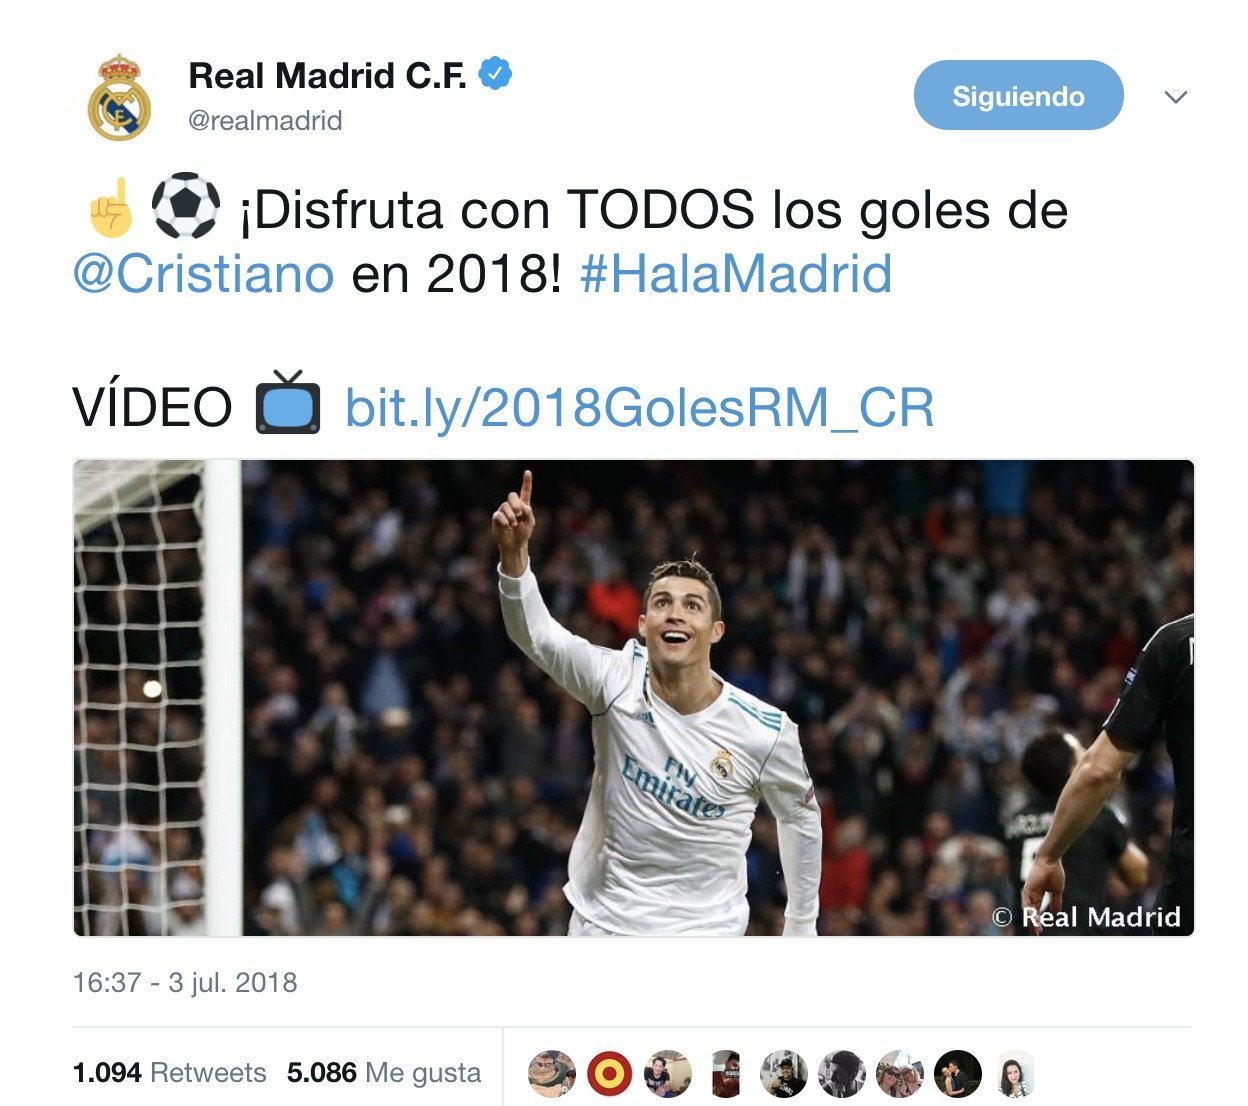 La respuesta del Real Madrid a los rumores sobre Cristiano